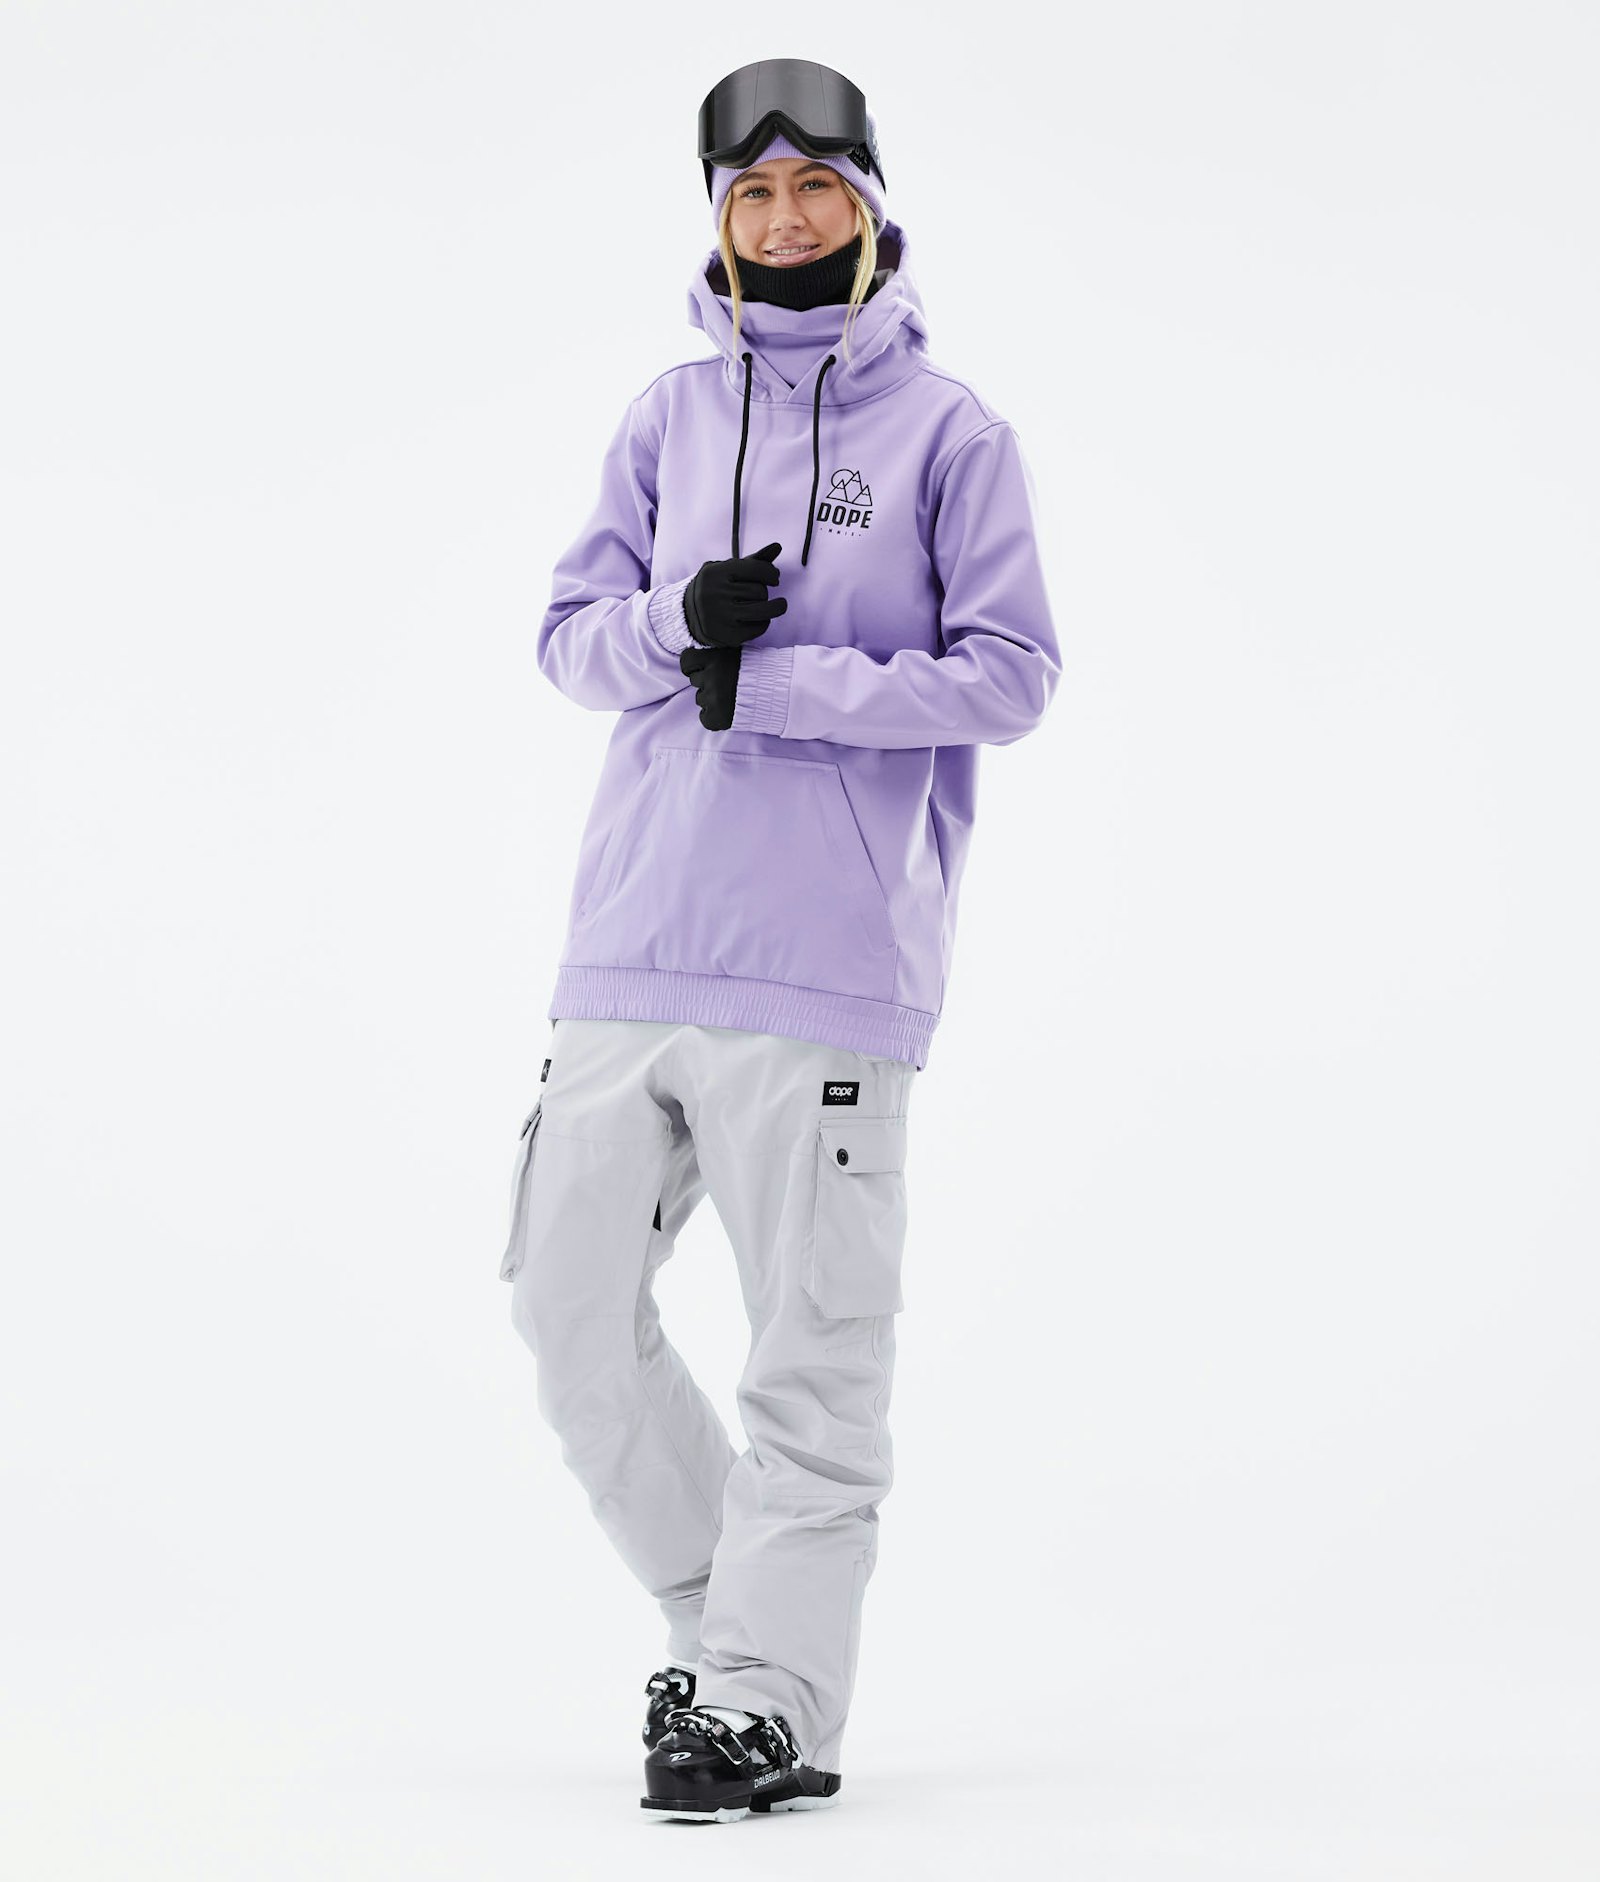 Dope Yeti 2021 Skijacke Damen Rise Faded Violet